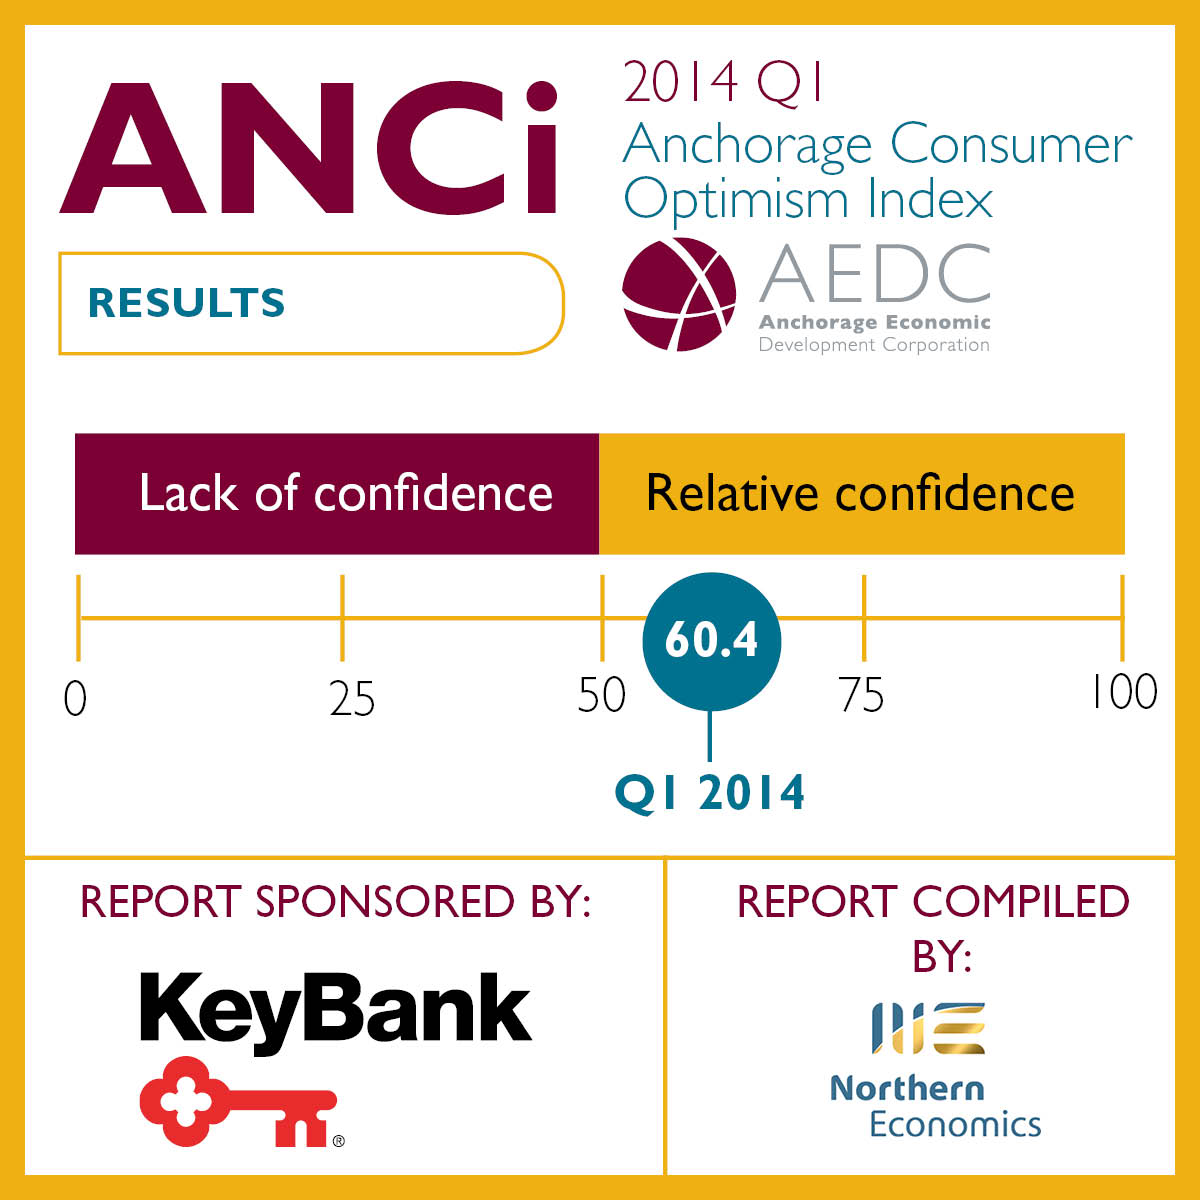 Anchorage Consumer Optimism Index: 2014 Q1